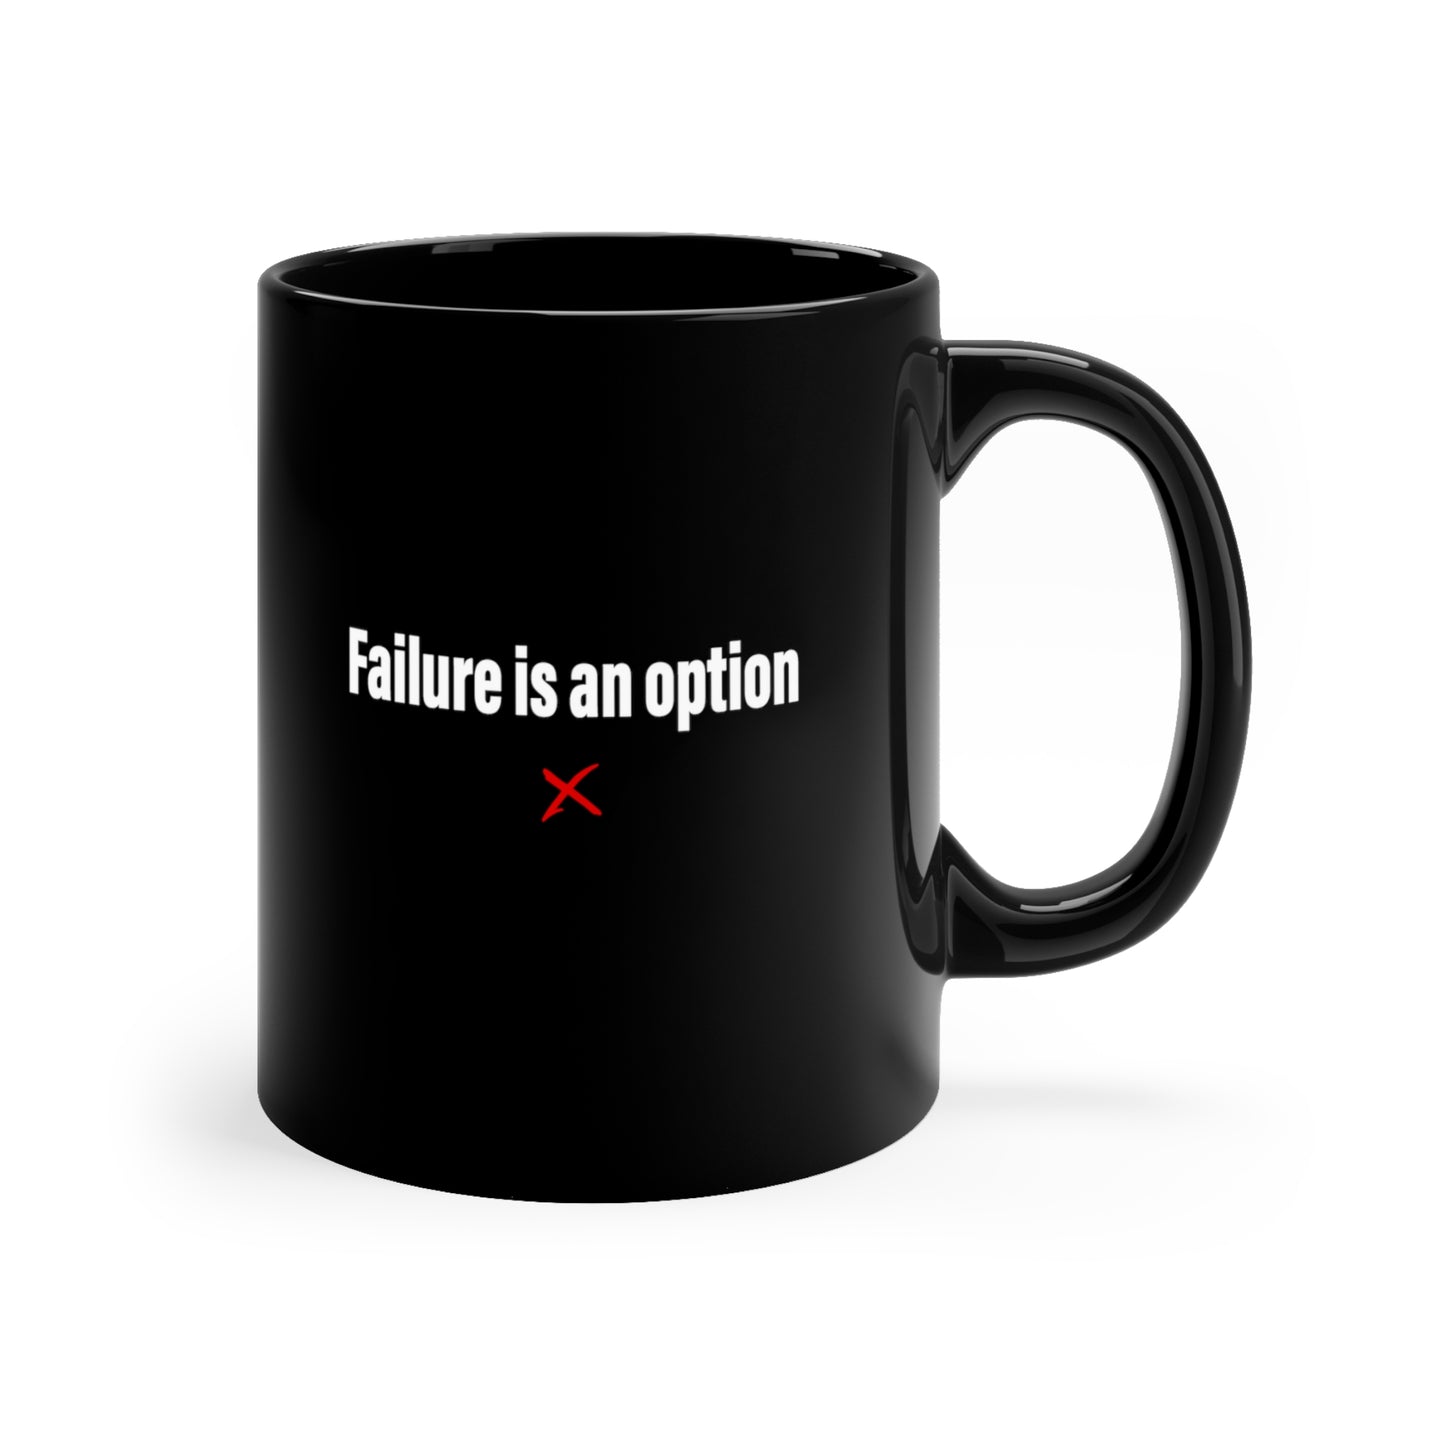 Failure is an option - Mug